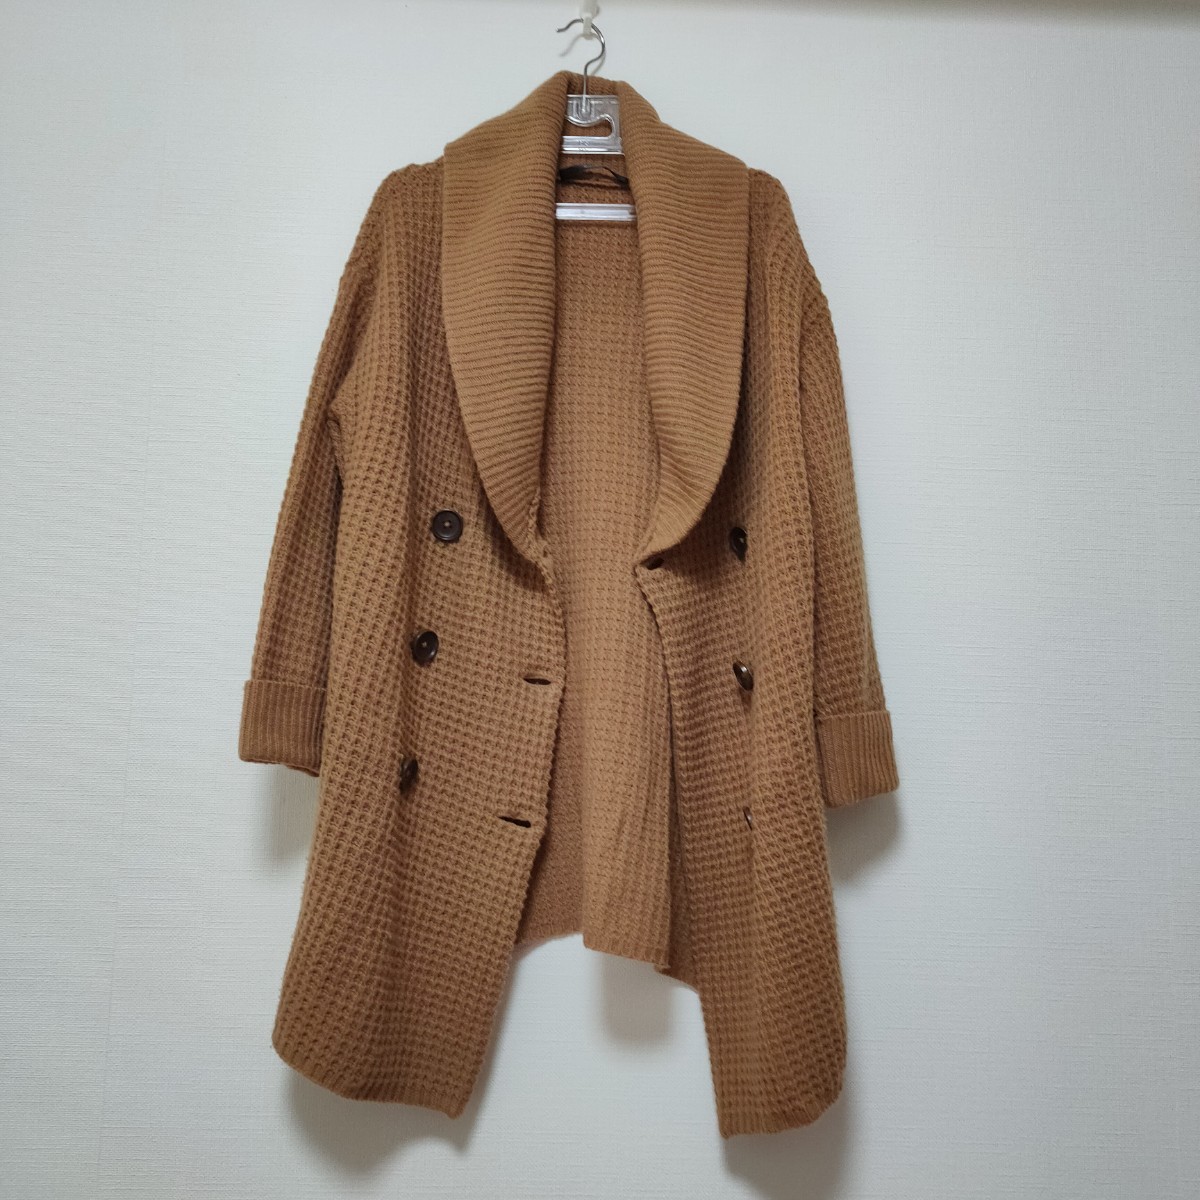  прекрасный товар Banner Barrett шаль цвет вязаный пальто шерсть Blend длинный кардиган Brown 38